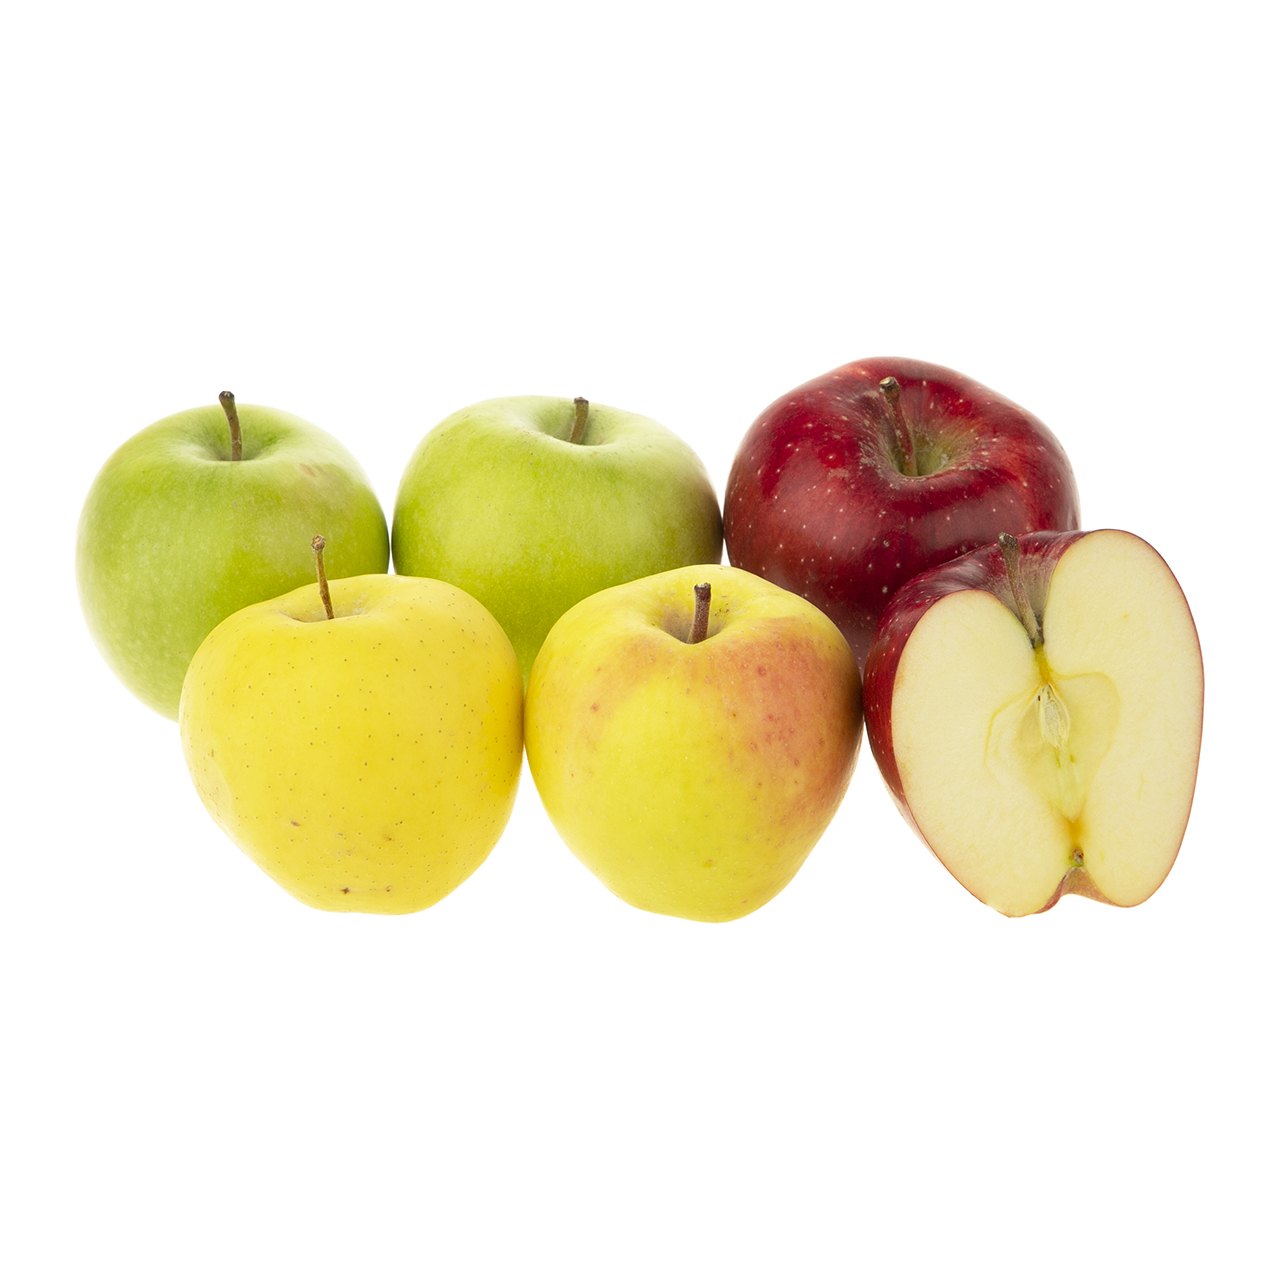 سه سیب درجه یک - 0.9 کیلوگرم (6 عدد)